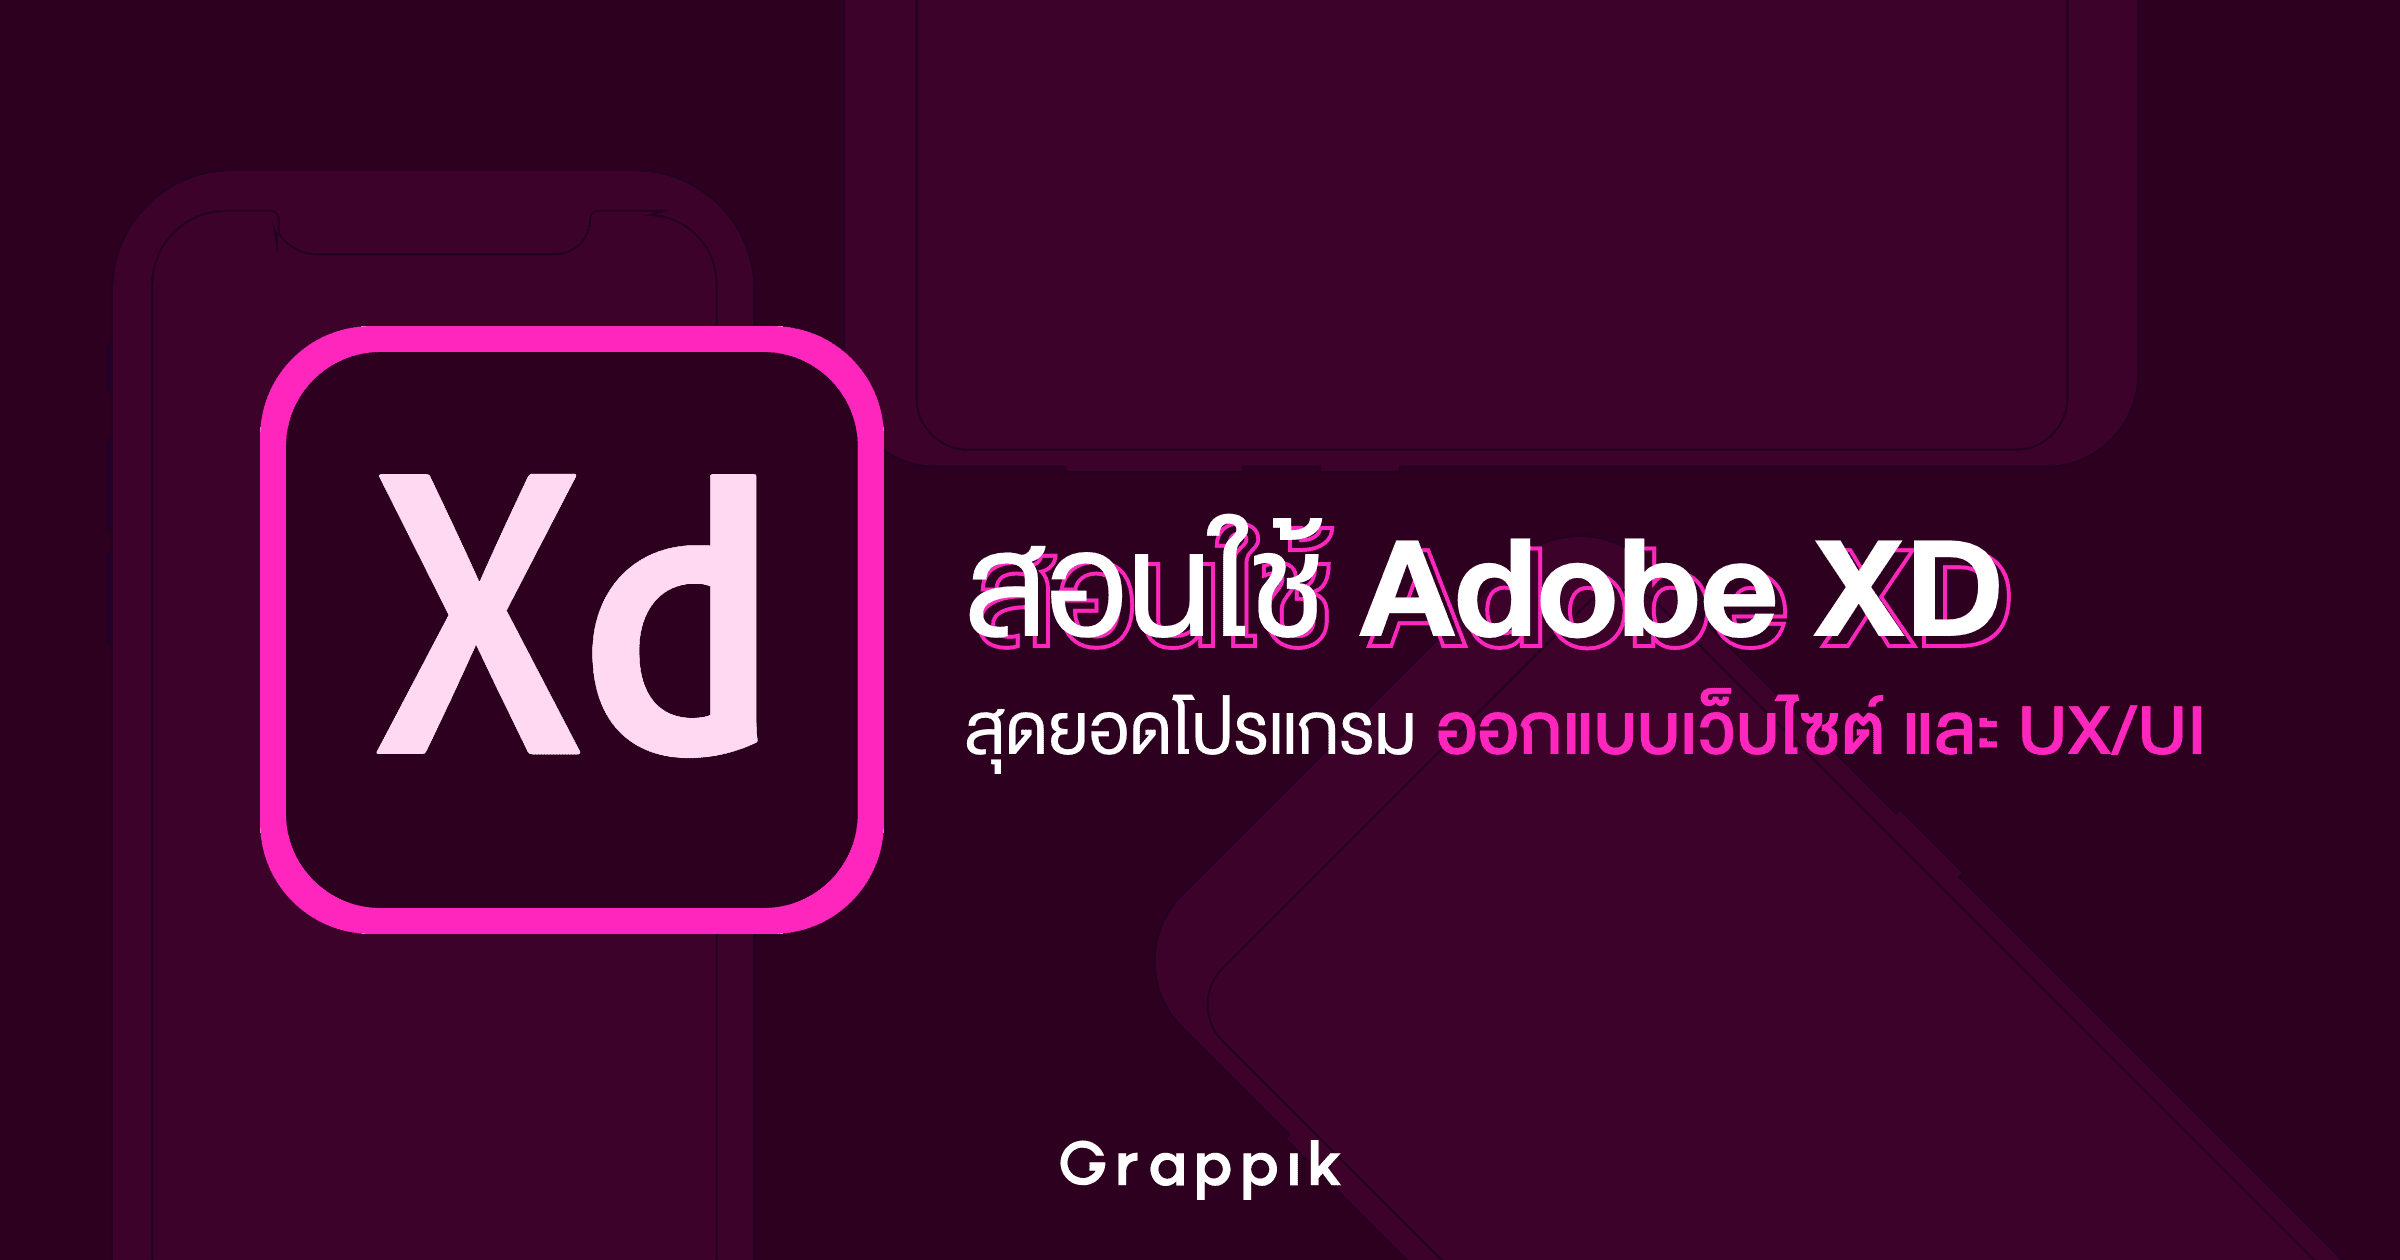 สอนใช้ Adobe XD สุดยอดโปรแกรมออกแบบเว็บไซต์ และ UX/UI ขั้นพื้นฐาน